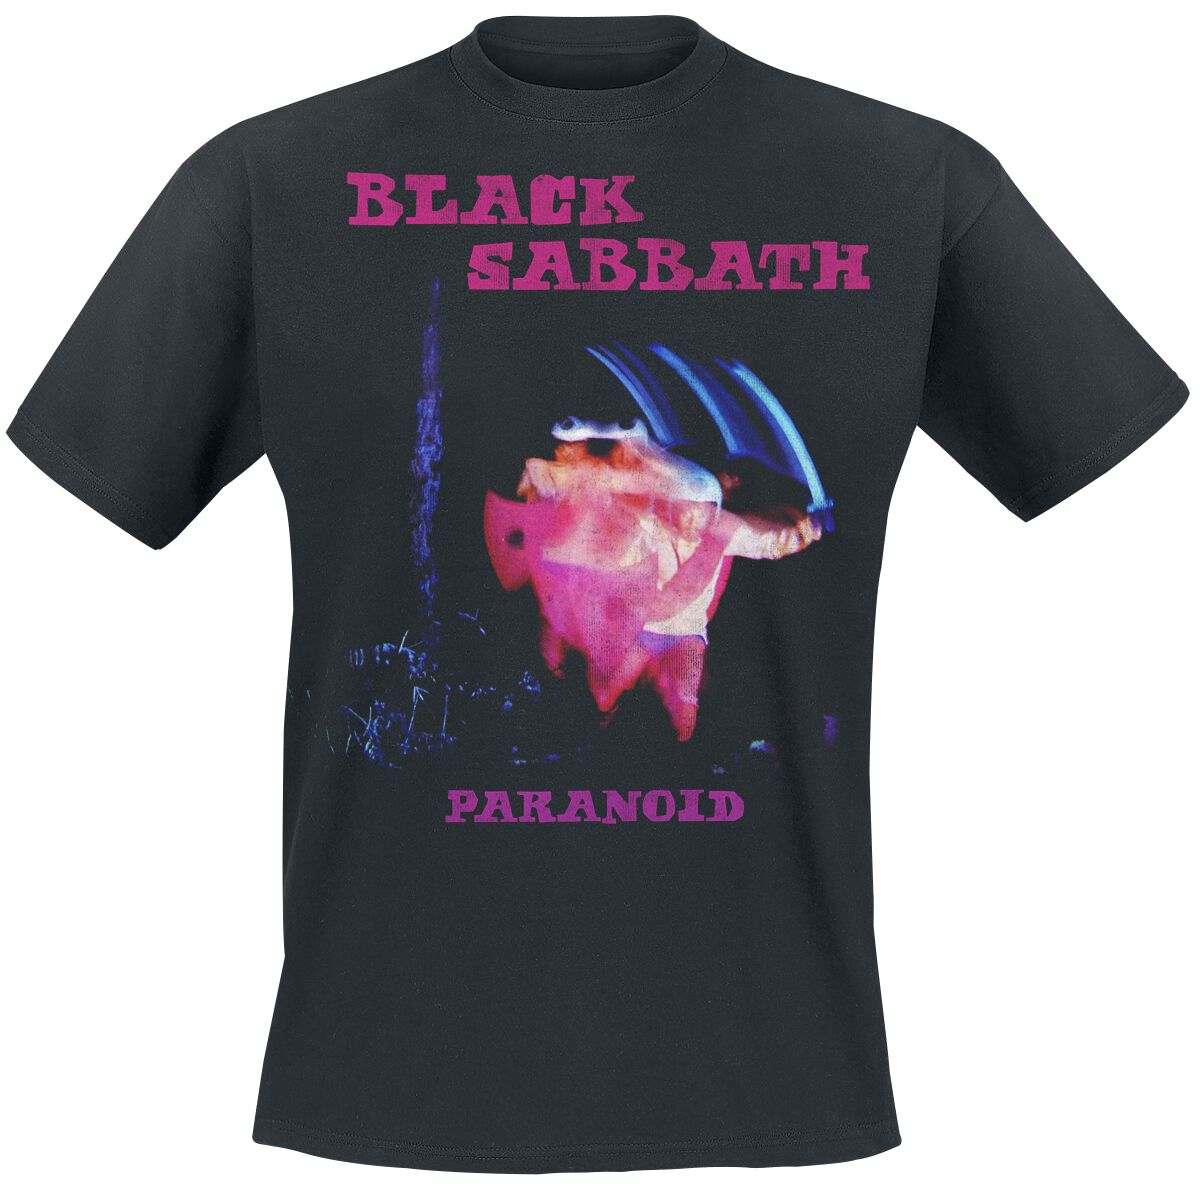 Black Sabbath T-Shirt - Paranoid Tracklist - S bis XXL - für Männer - Größe M - schwarz  - Lizenziertes Merchandise!